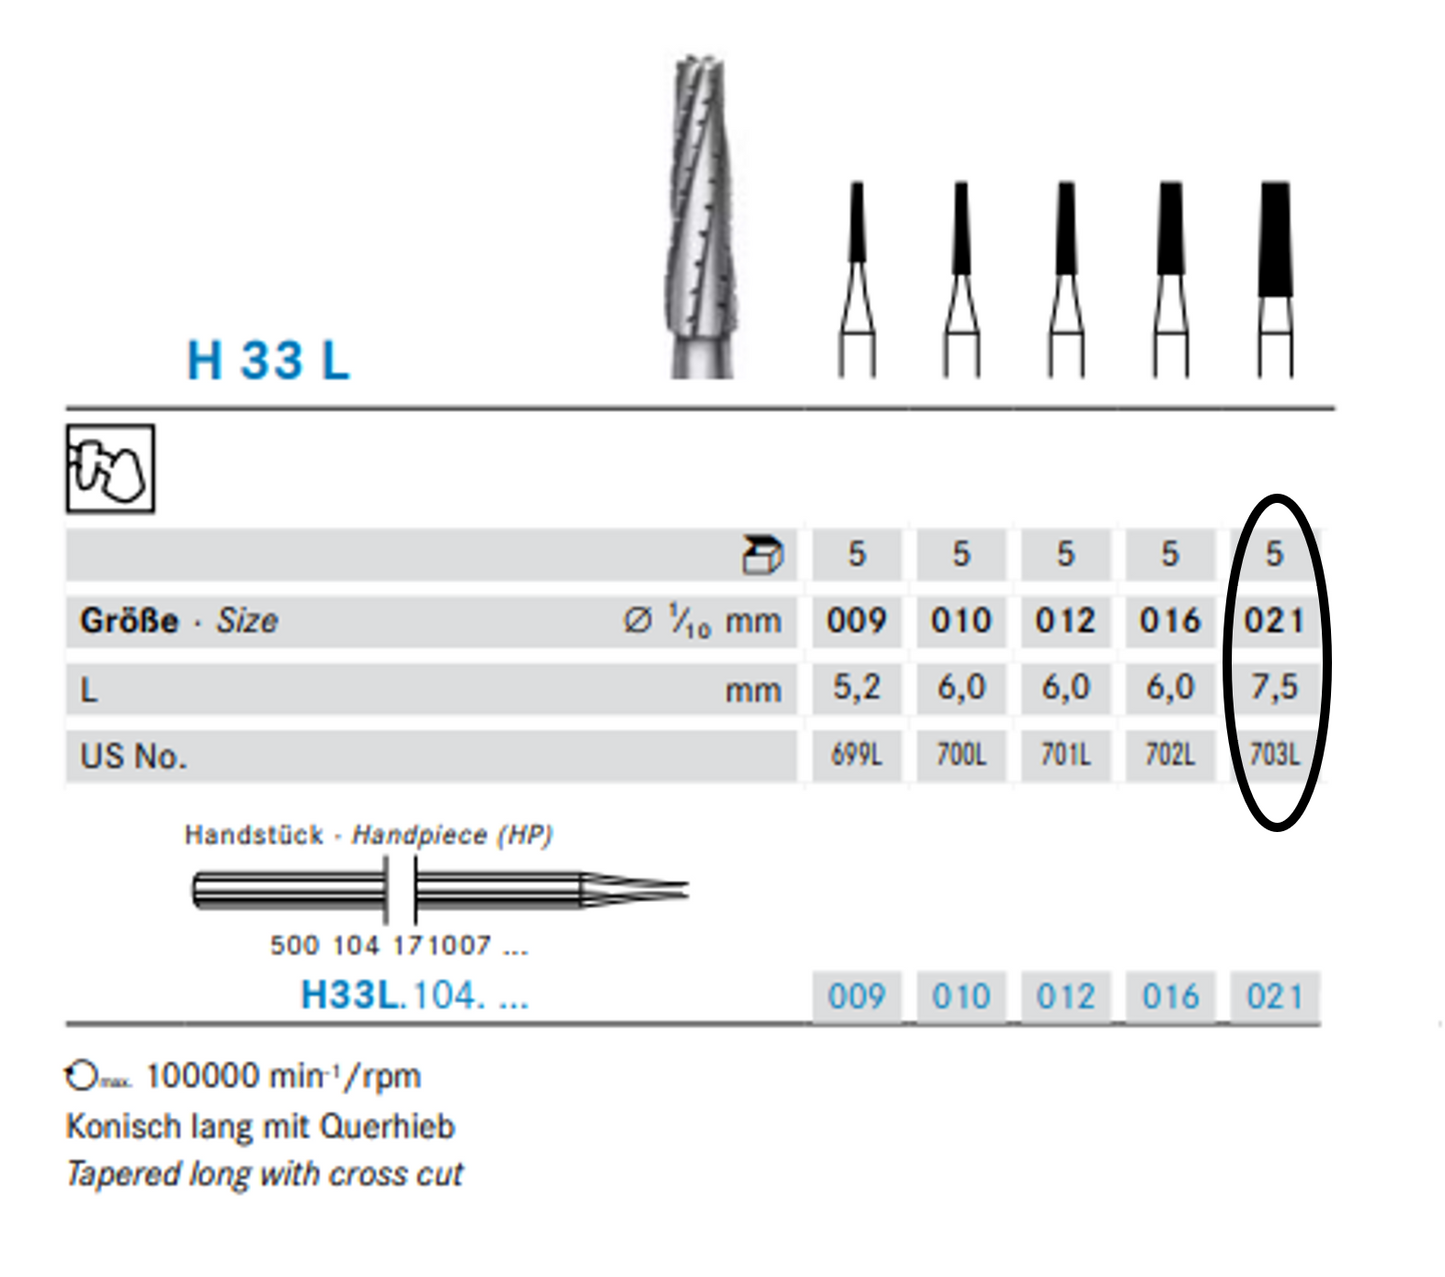 HP Crossut Taper Fissure Bur | 44,5mm | US 703L